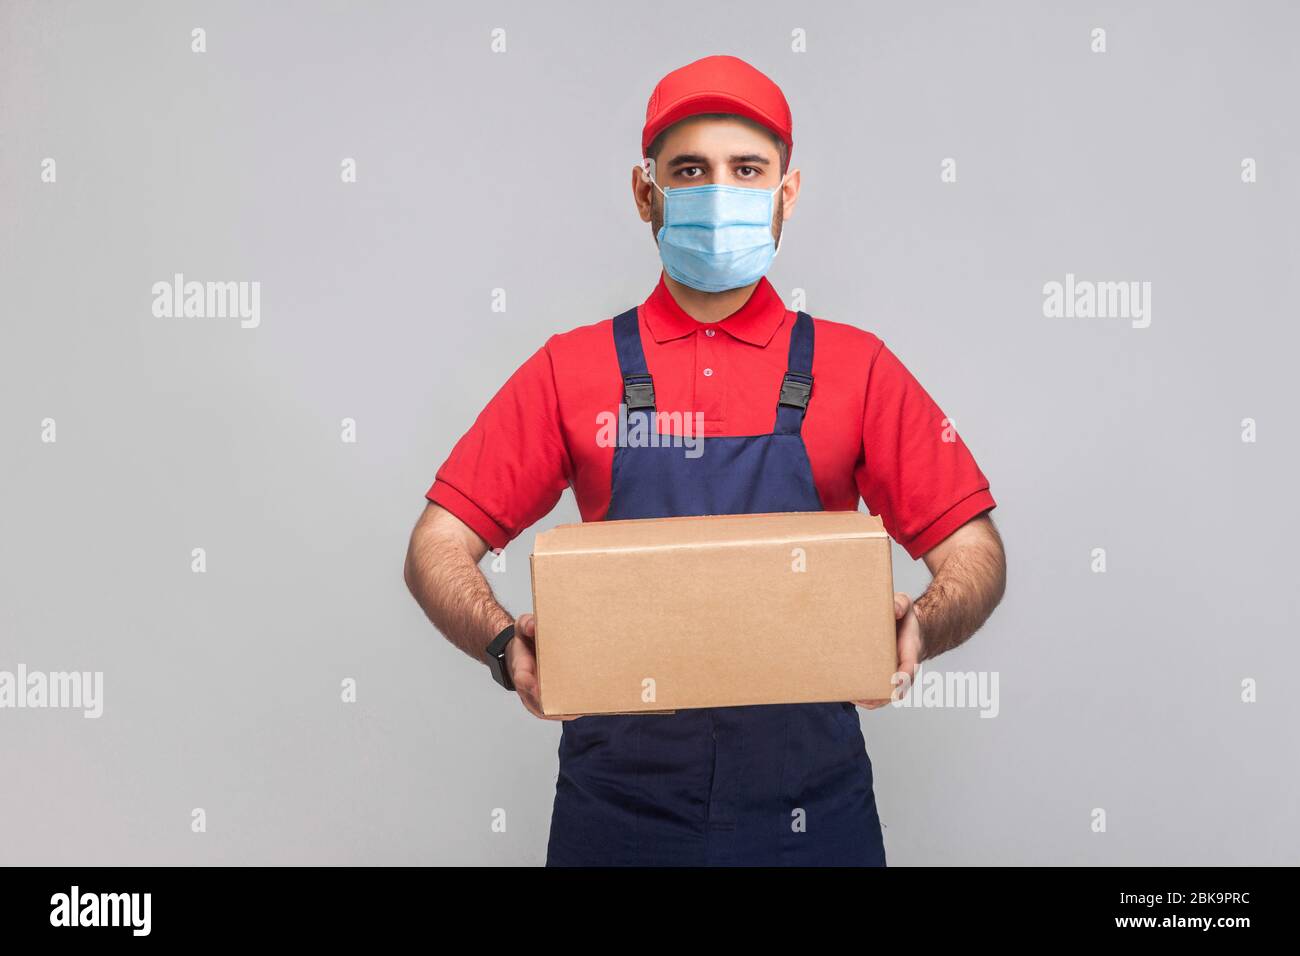 Lieferung in Quarantäne. Portrait des jungen Mannes mit chirurgischer medizinischer Maske in blauer Uniform und rotem T-Shirt, das steht und den Pappkarton am Gre hält Stockfoto